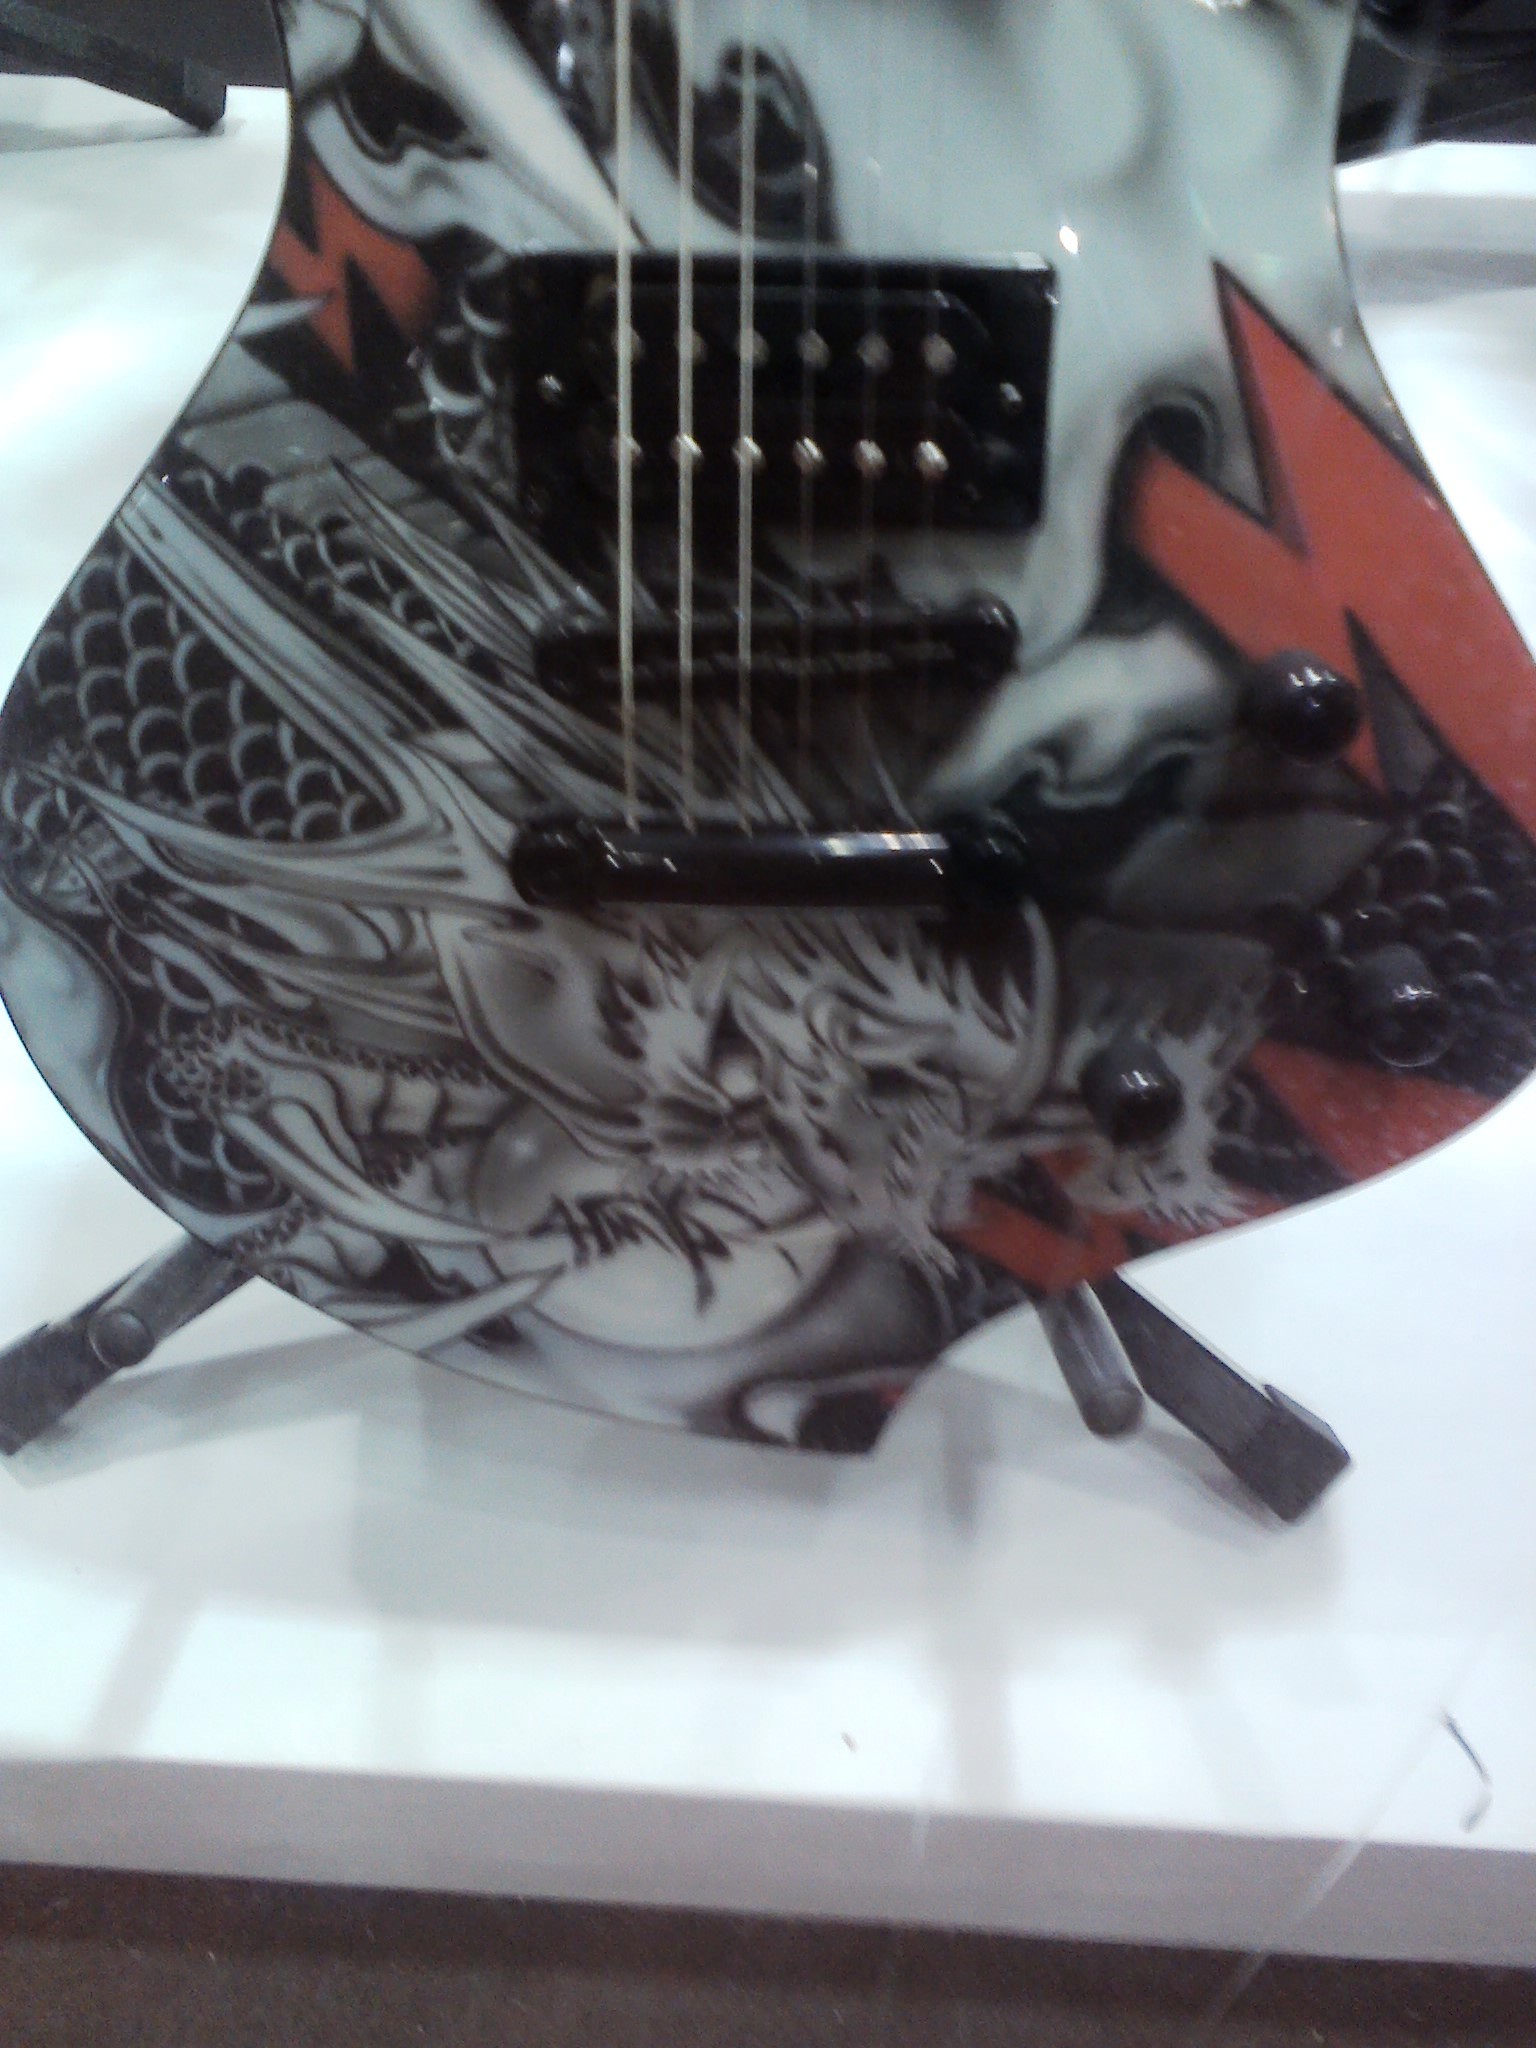 Guitarra com dragão chinês desenhado.